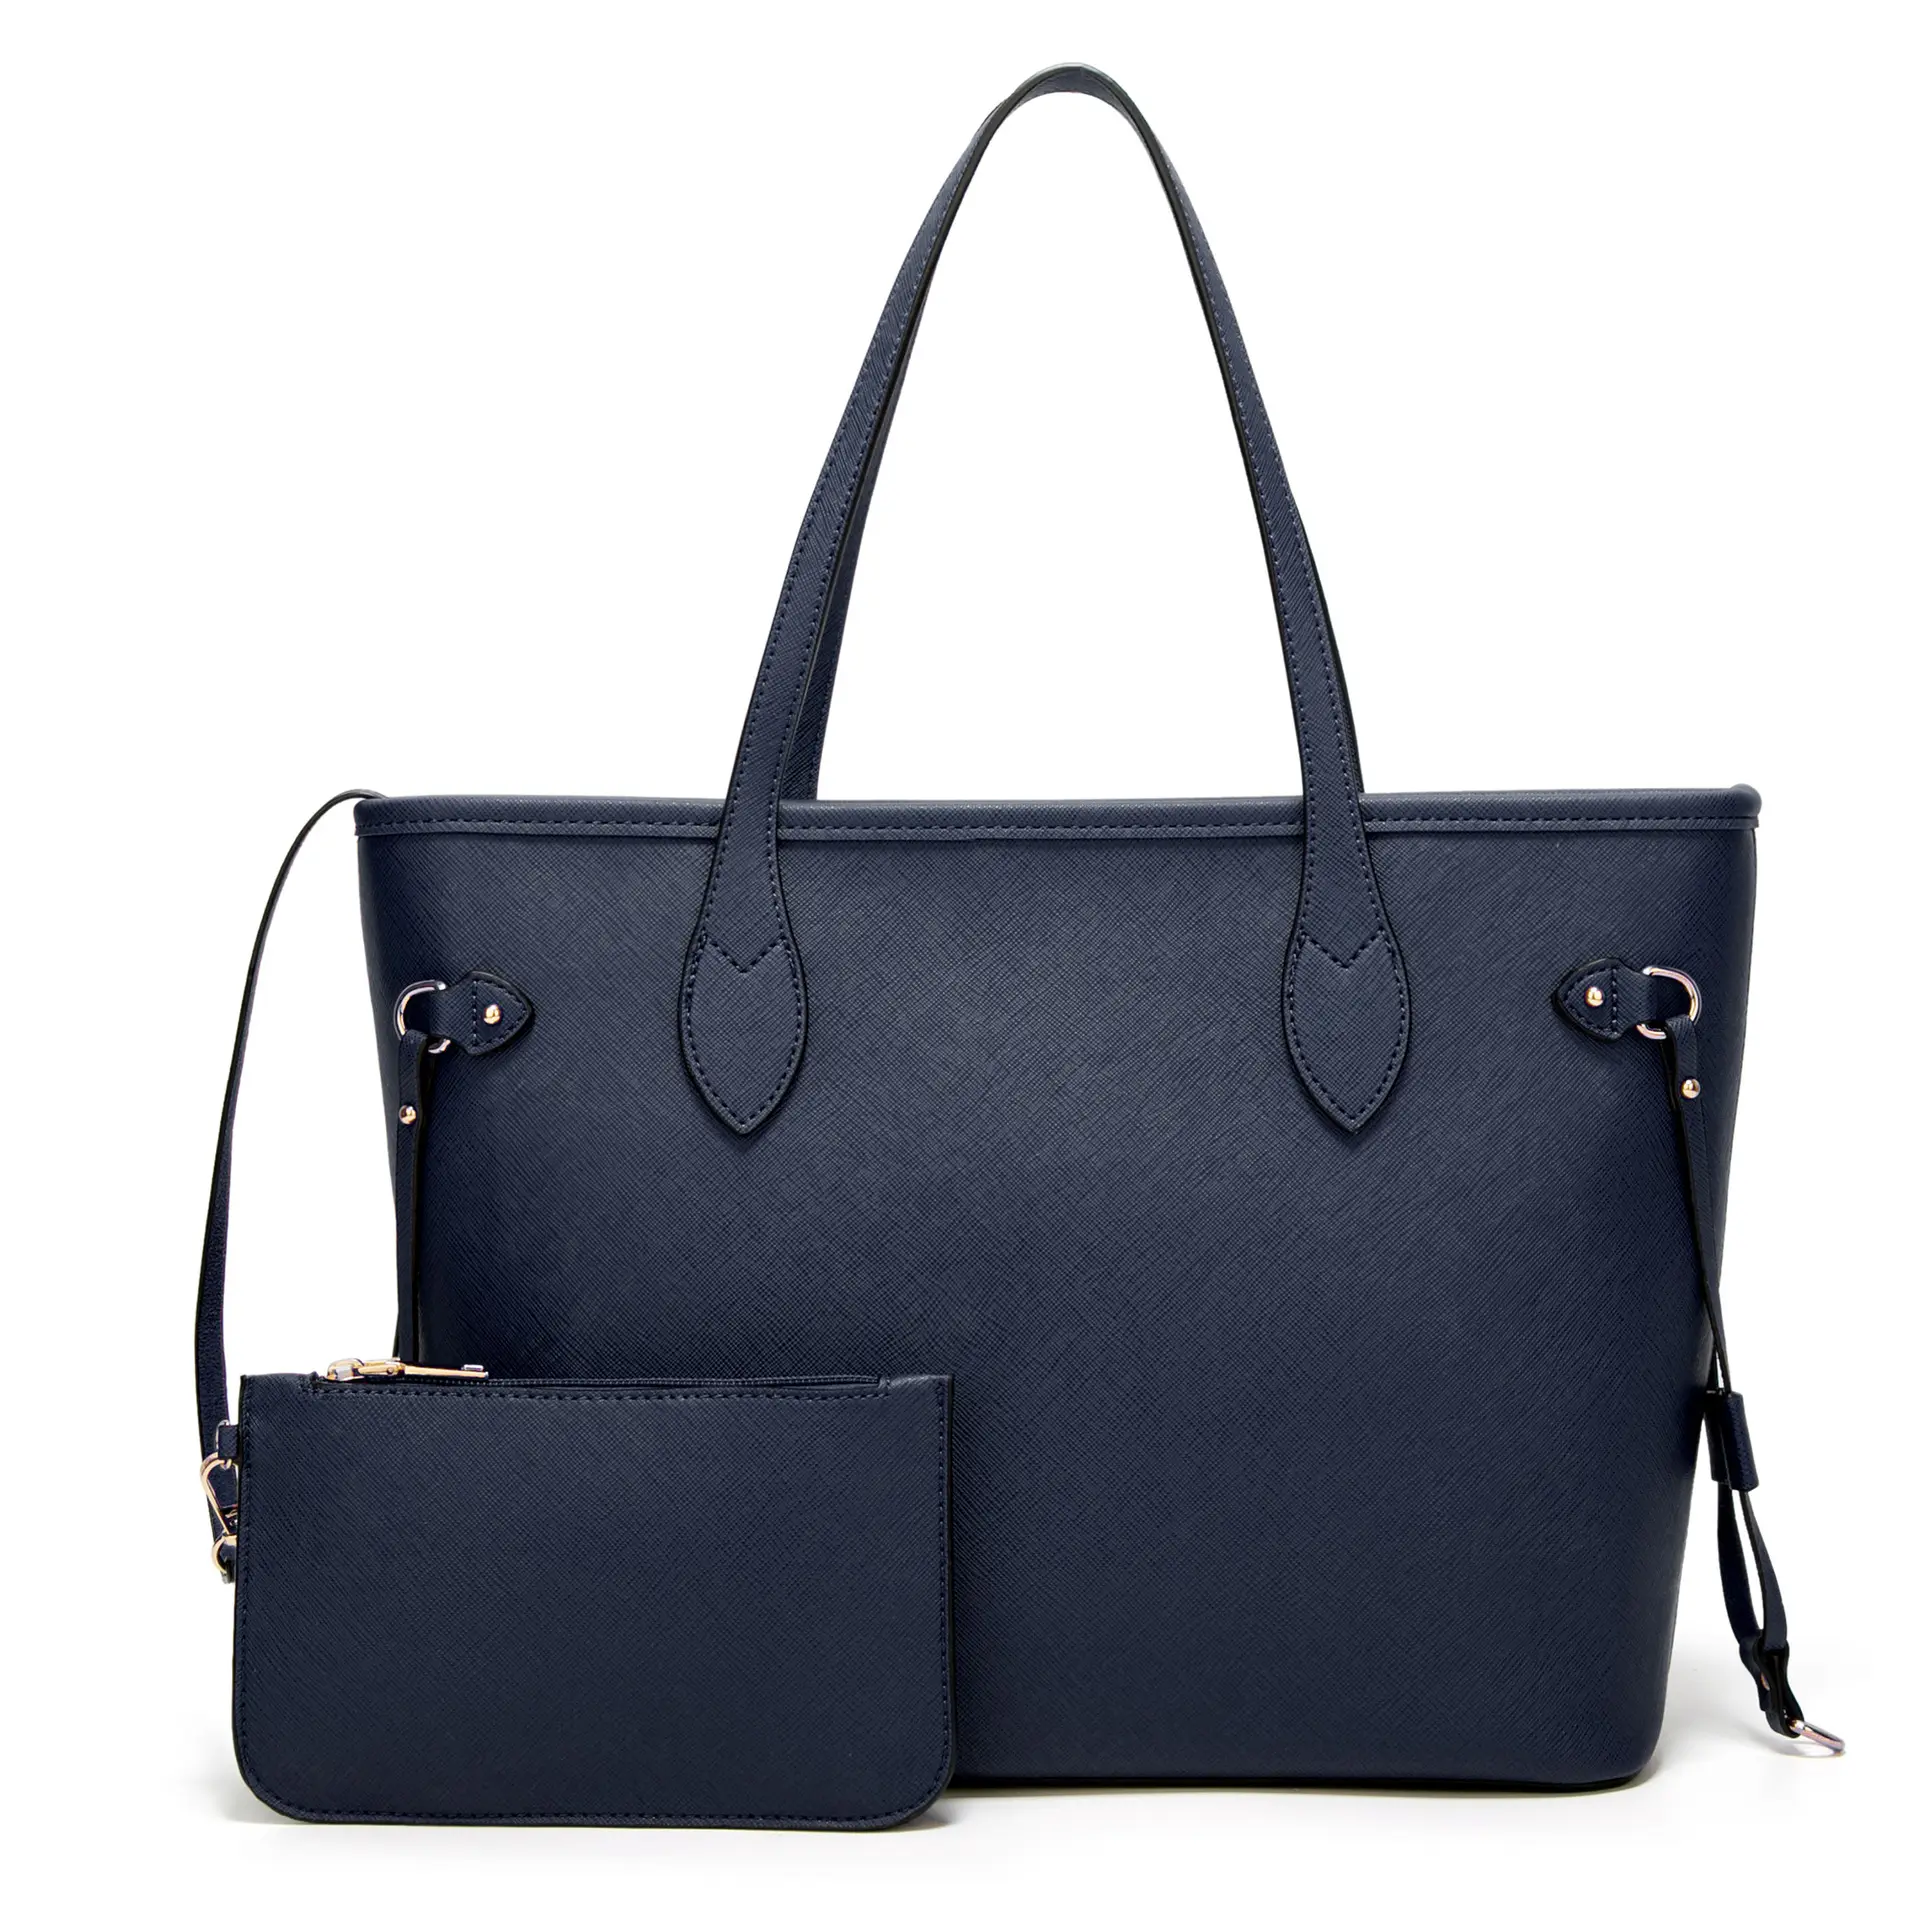 Fashion Leather Handbags Large Capacity Tote Bags Famous Brands Shoulder Bag Top Handle Satchel Purse Set 2pcs